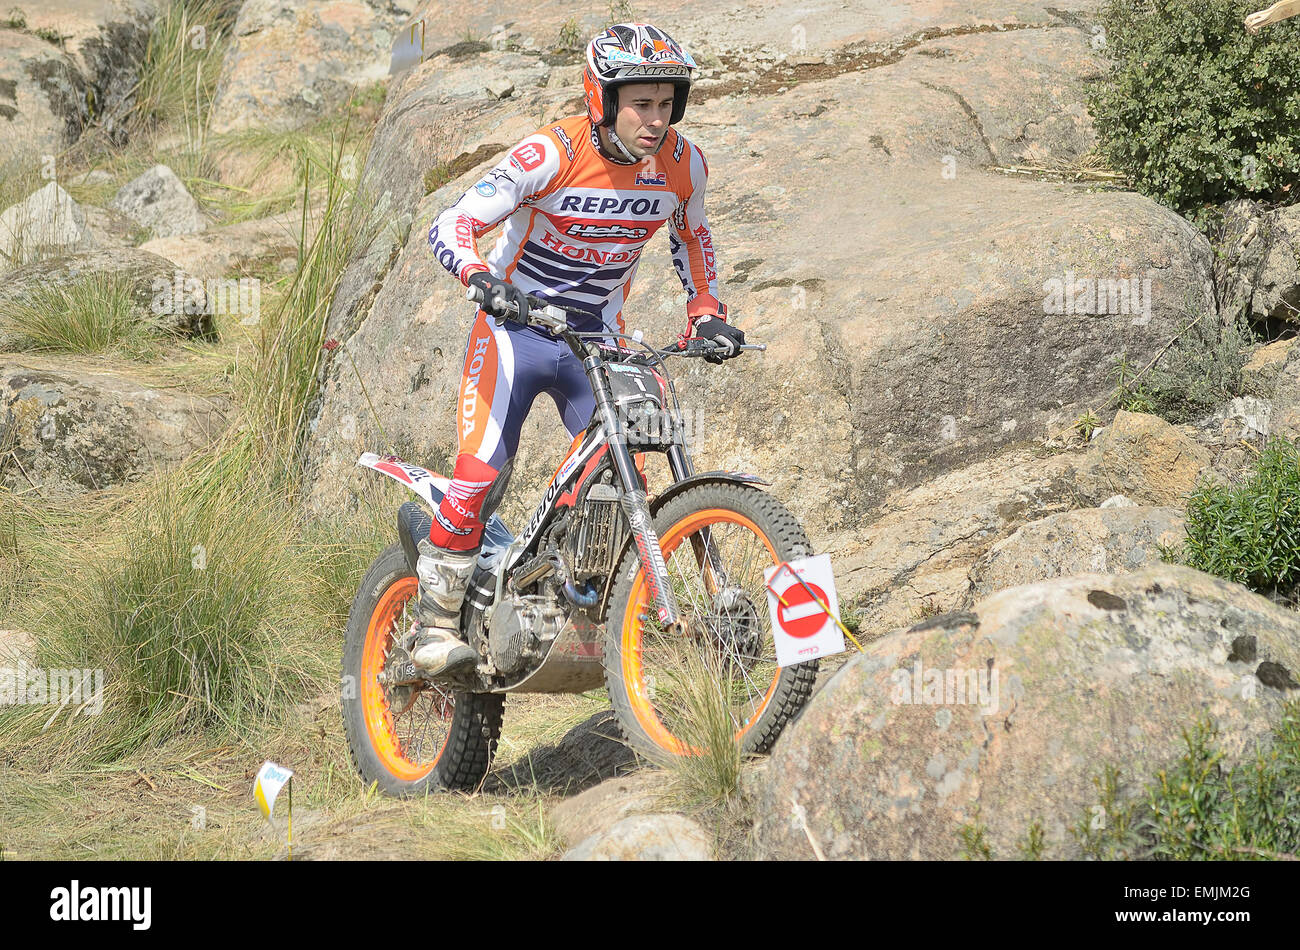 Spagna campionato di prova. Il campione del mondo, Toni Bou, unità della sua moto. Ha vinto la gara (TR1). Foto Stock